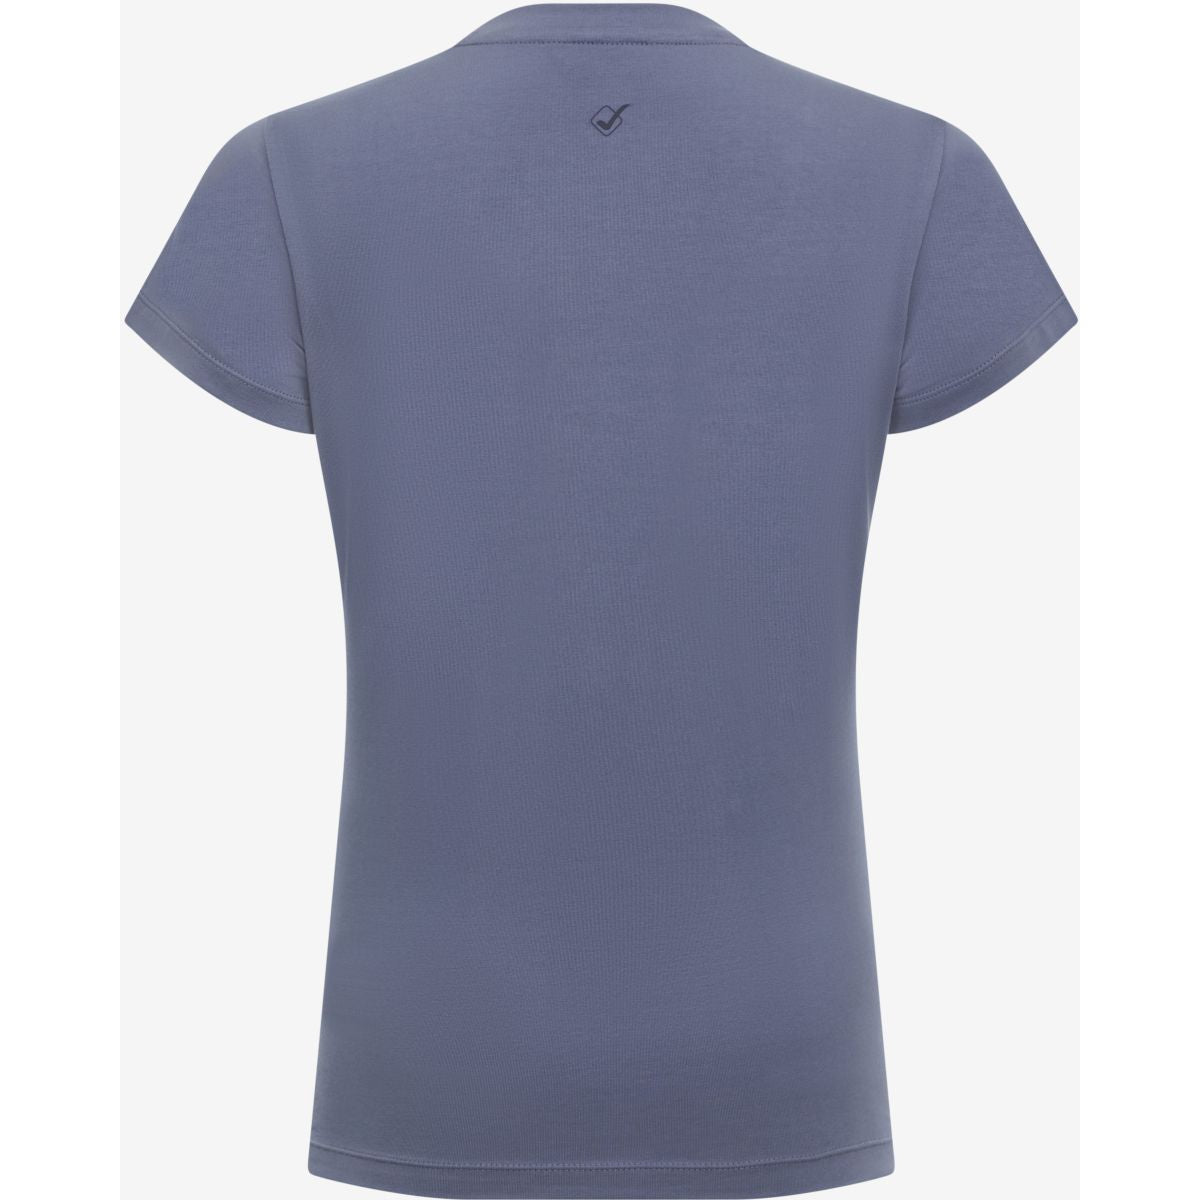 LeMieux T-Shirt Classique Jay Blue